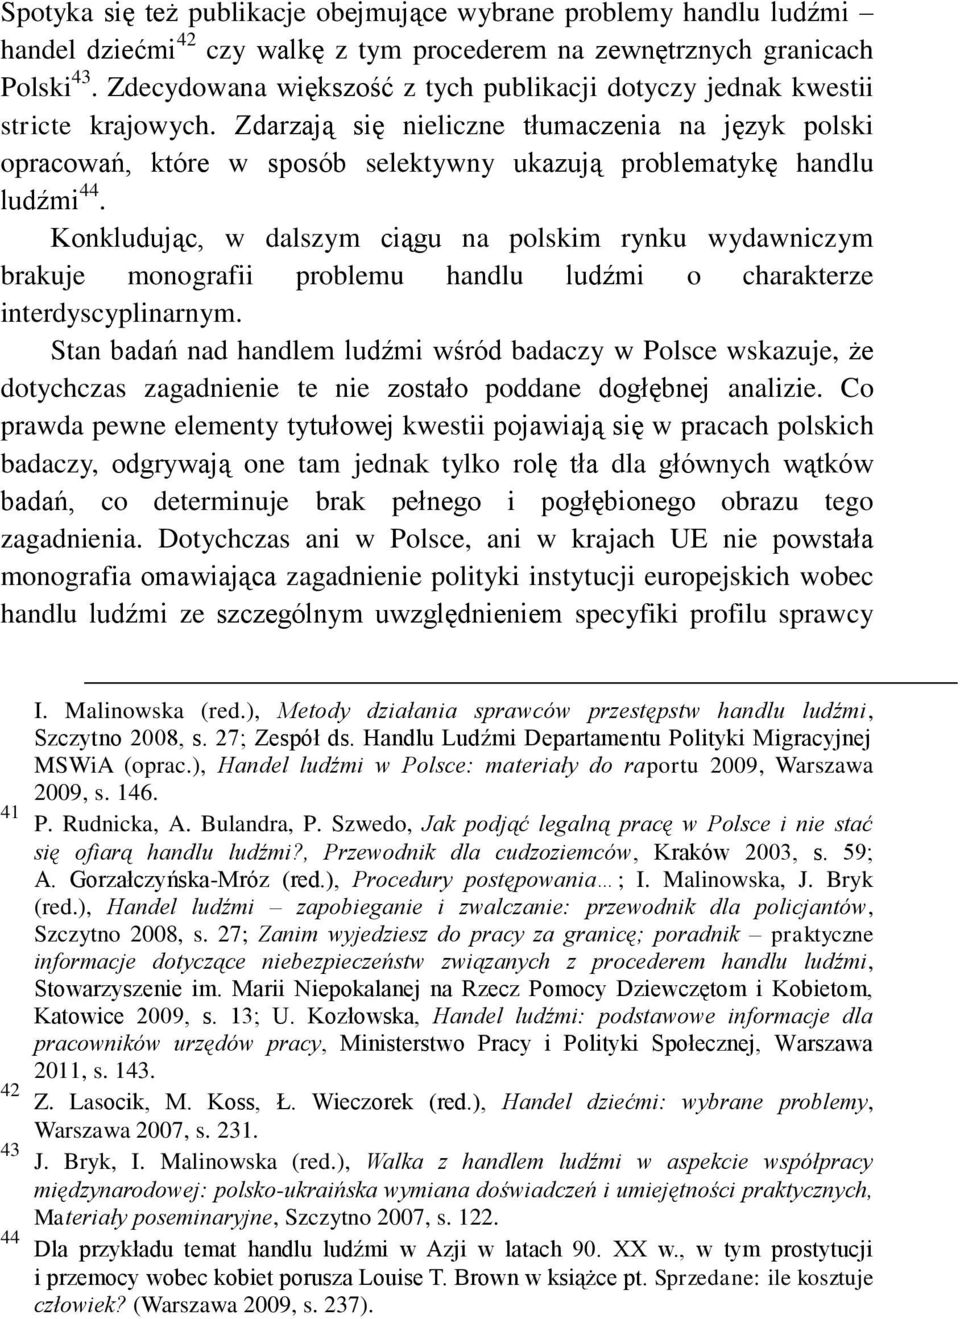 Zdarzają się nieliczne tłumaczenia na język polski opracowań, które w sposób selektywny ukazują problematykę handlu ludźmi 44.